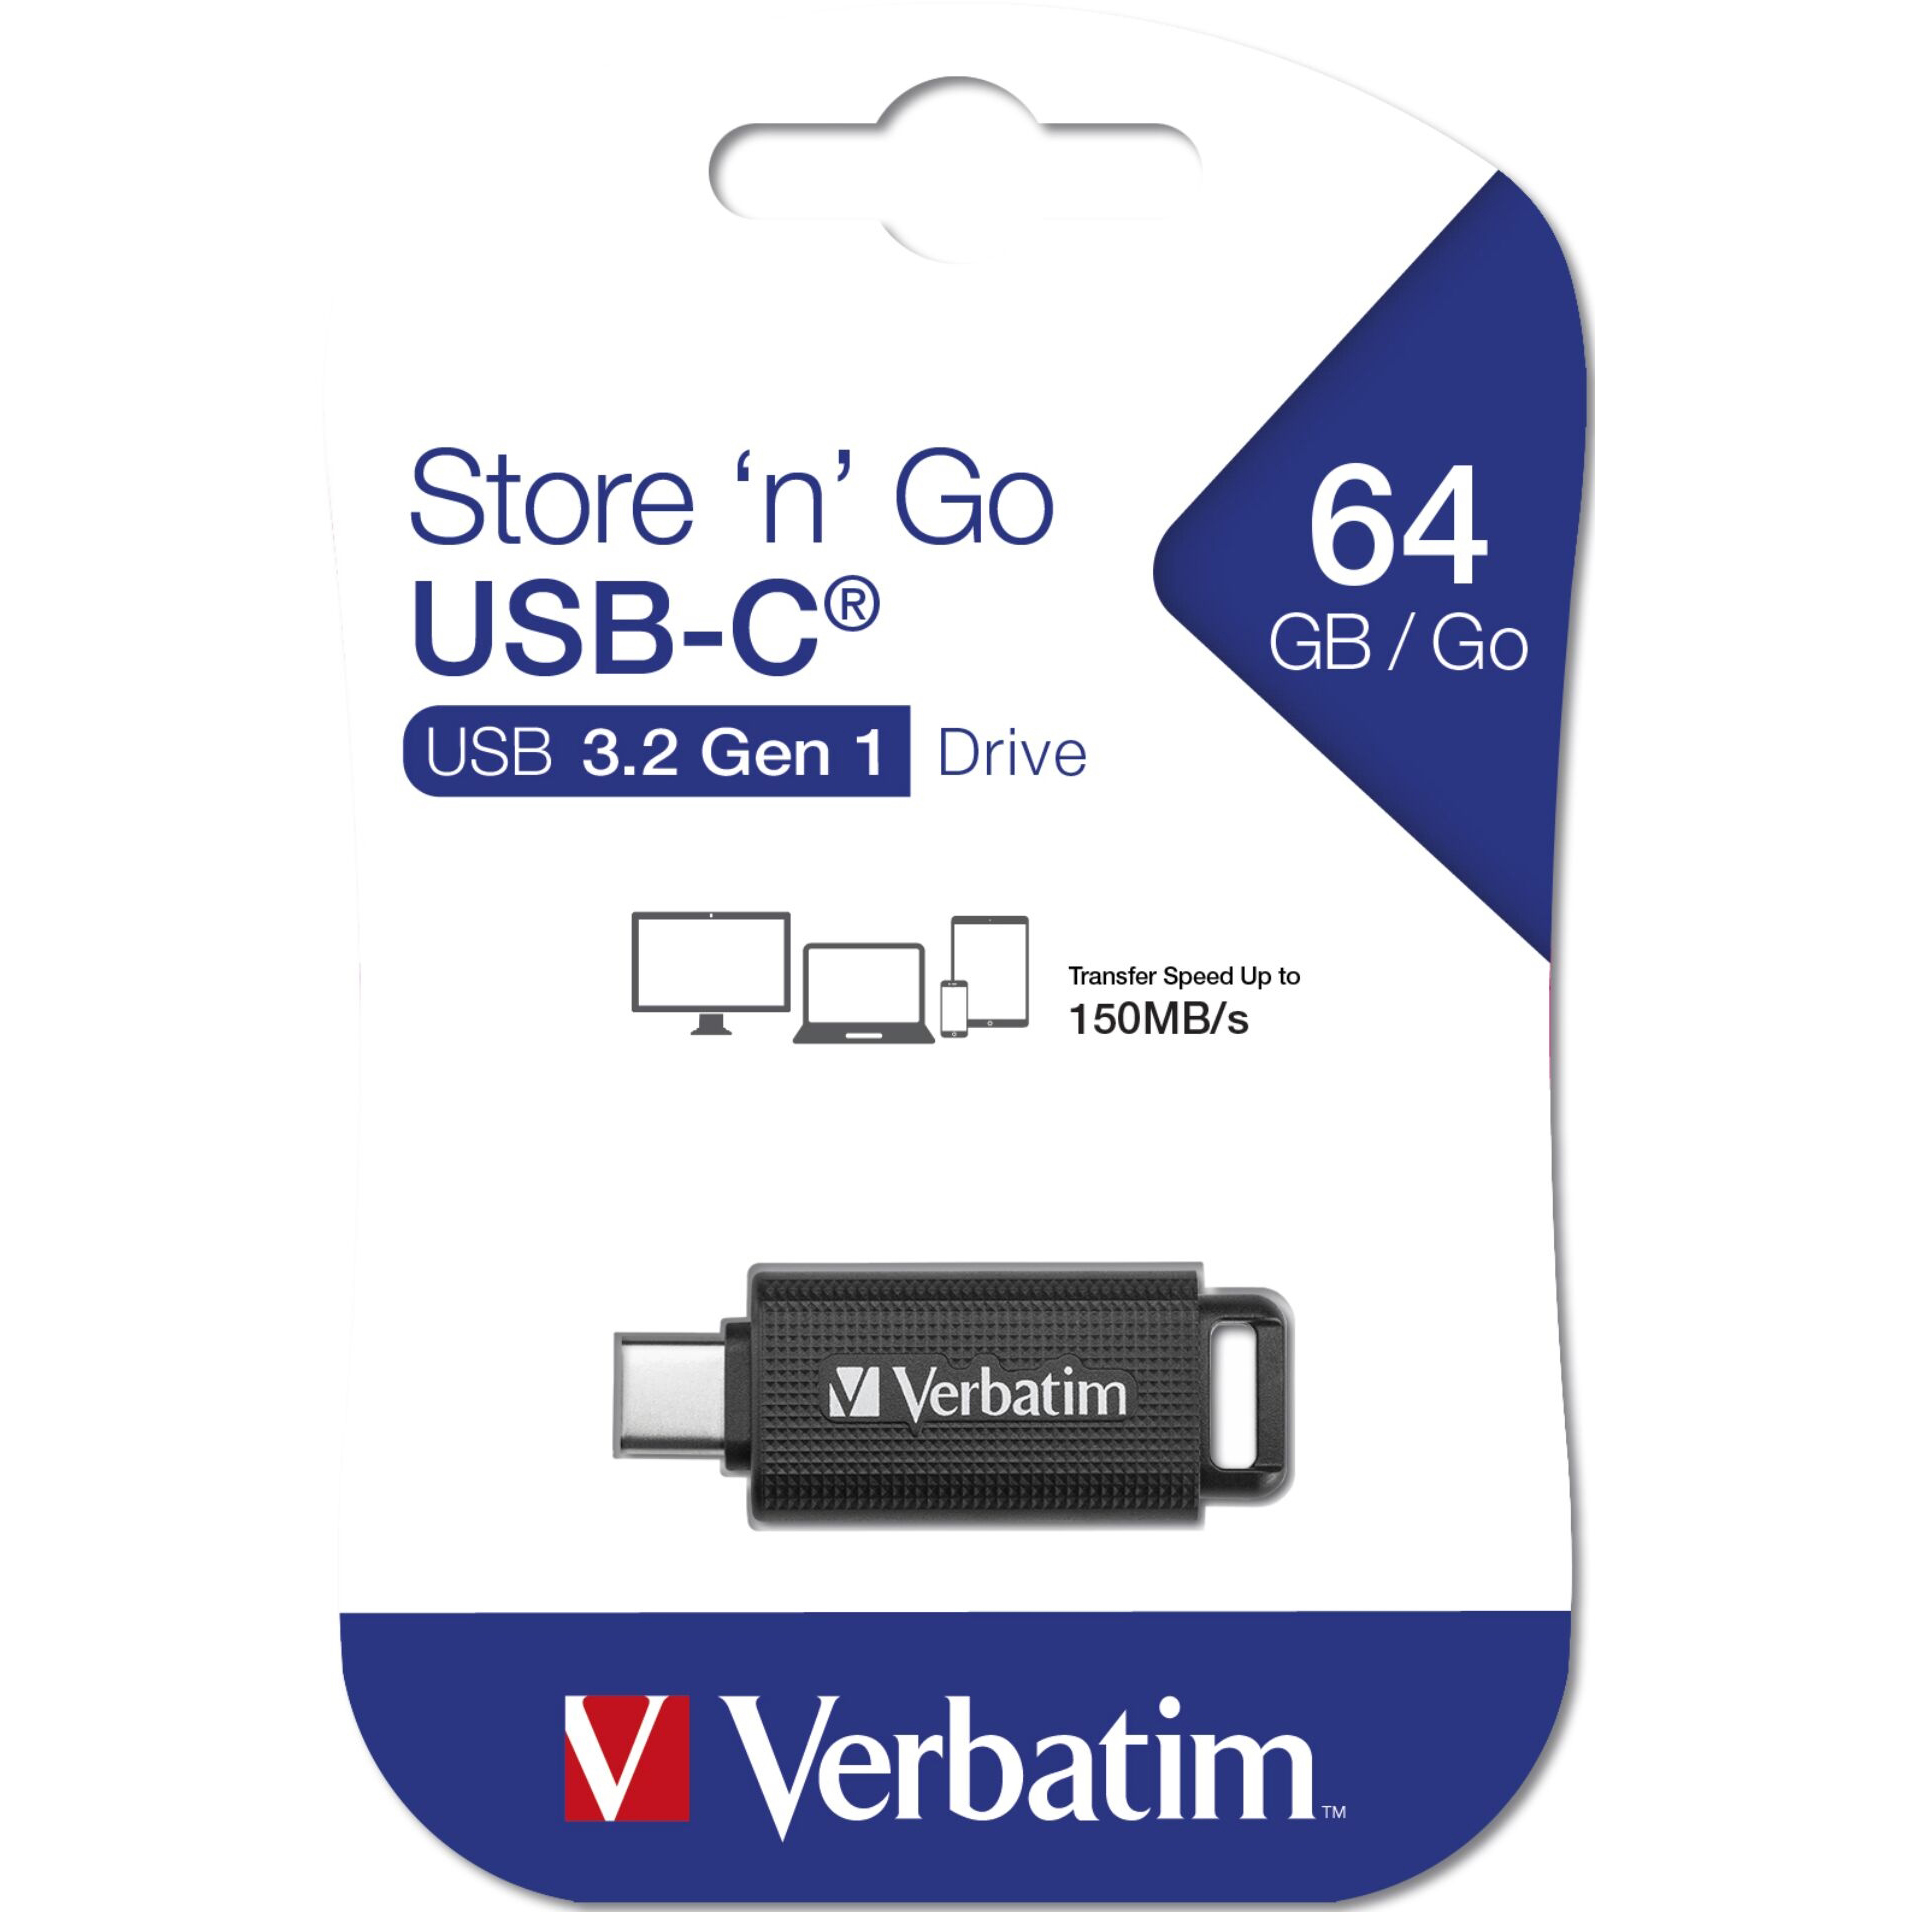 Original Verbatim Usb Drive 3.2 Gen 1 64Gb Retractable Usb-C (49458)